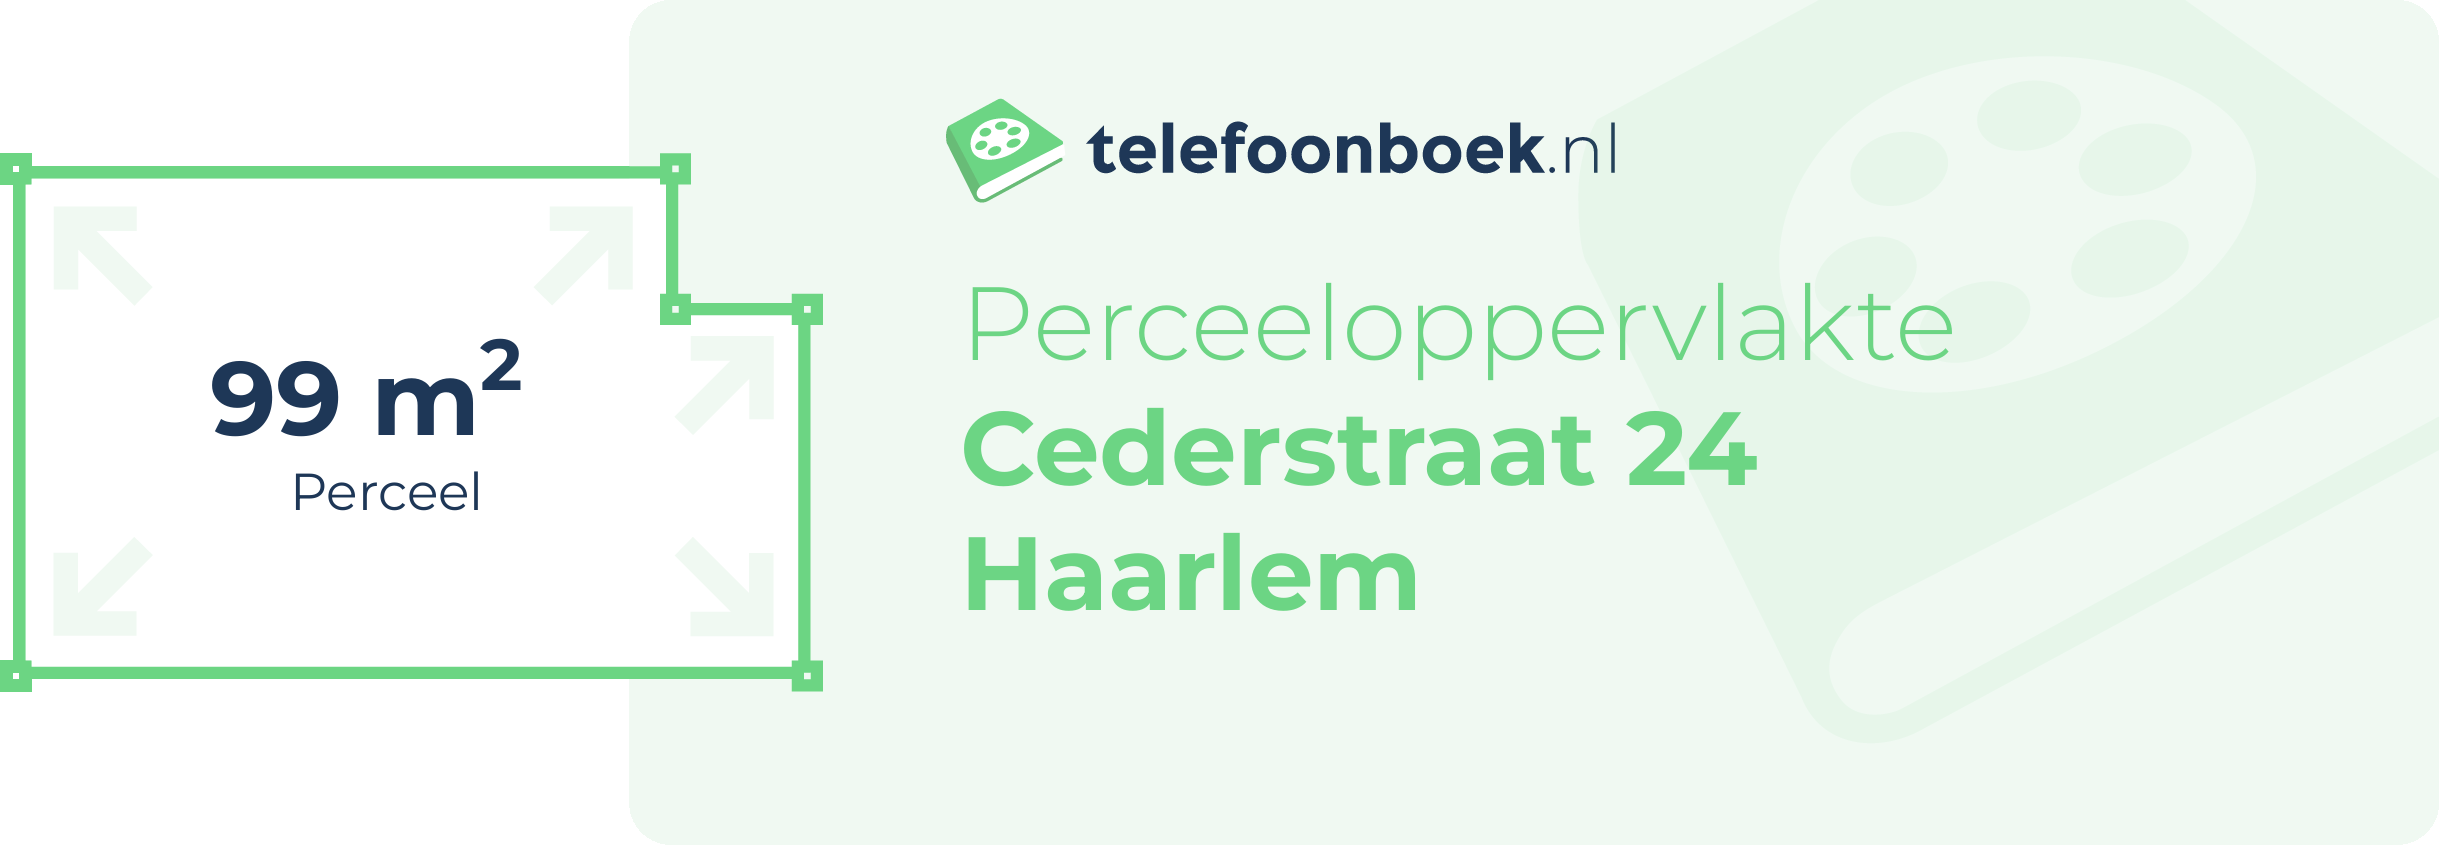 Perceeloppervlakte Cederstraat 24 Haarlem